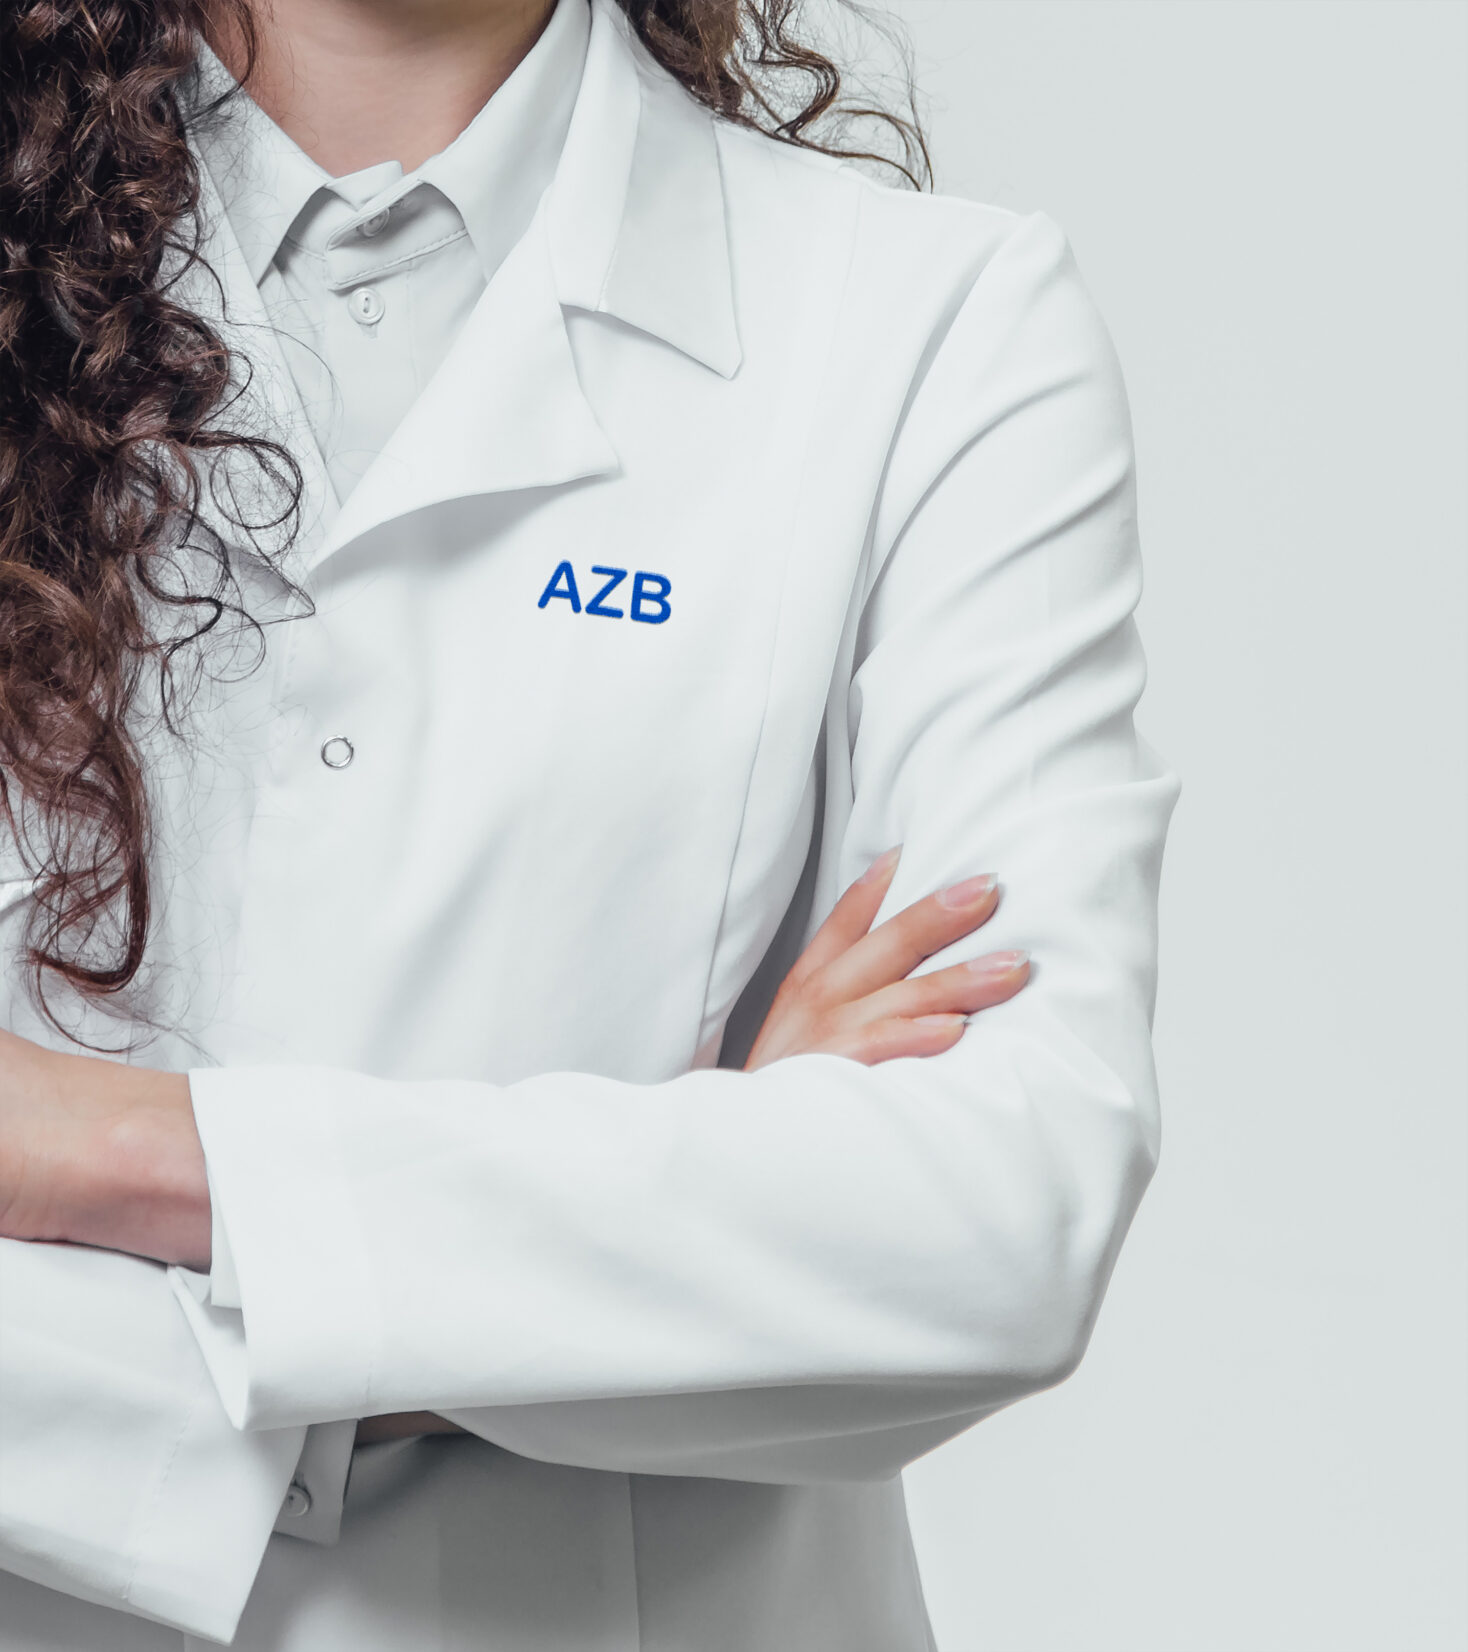 Firmen-Bekleidung mit dem Logo des AZB.